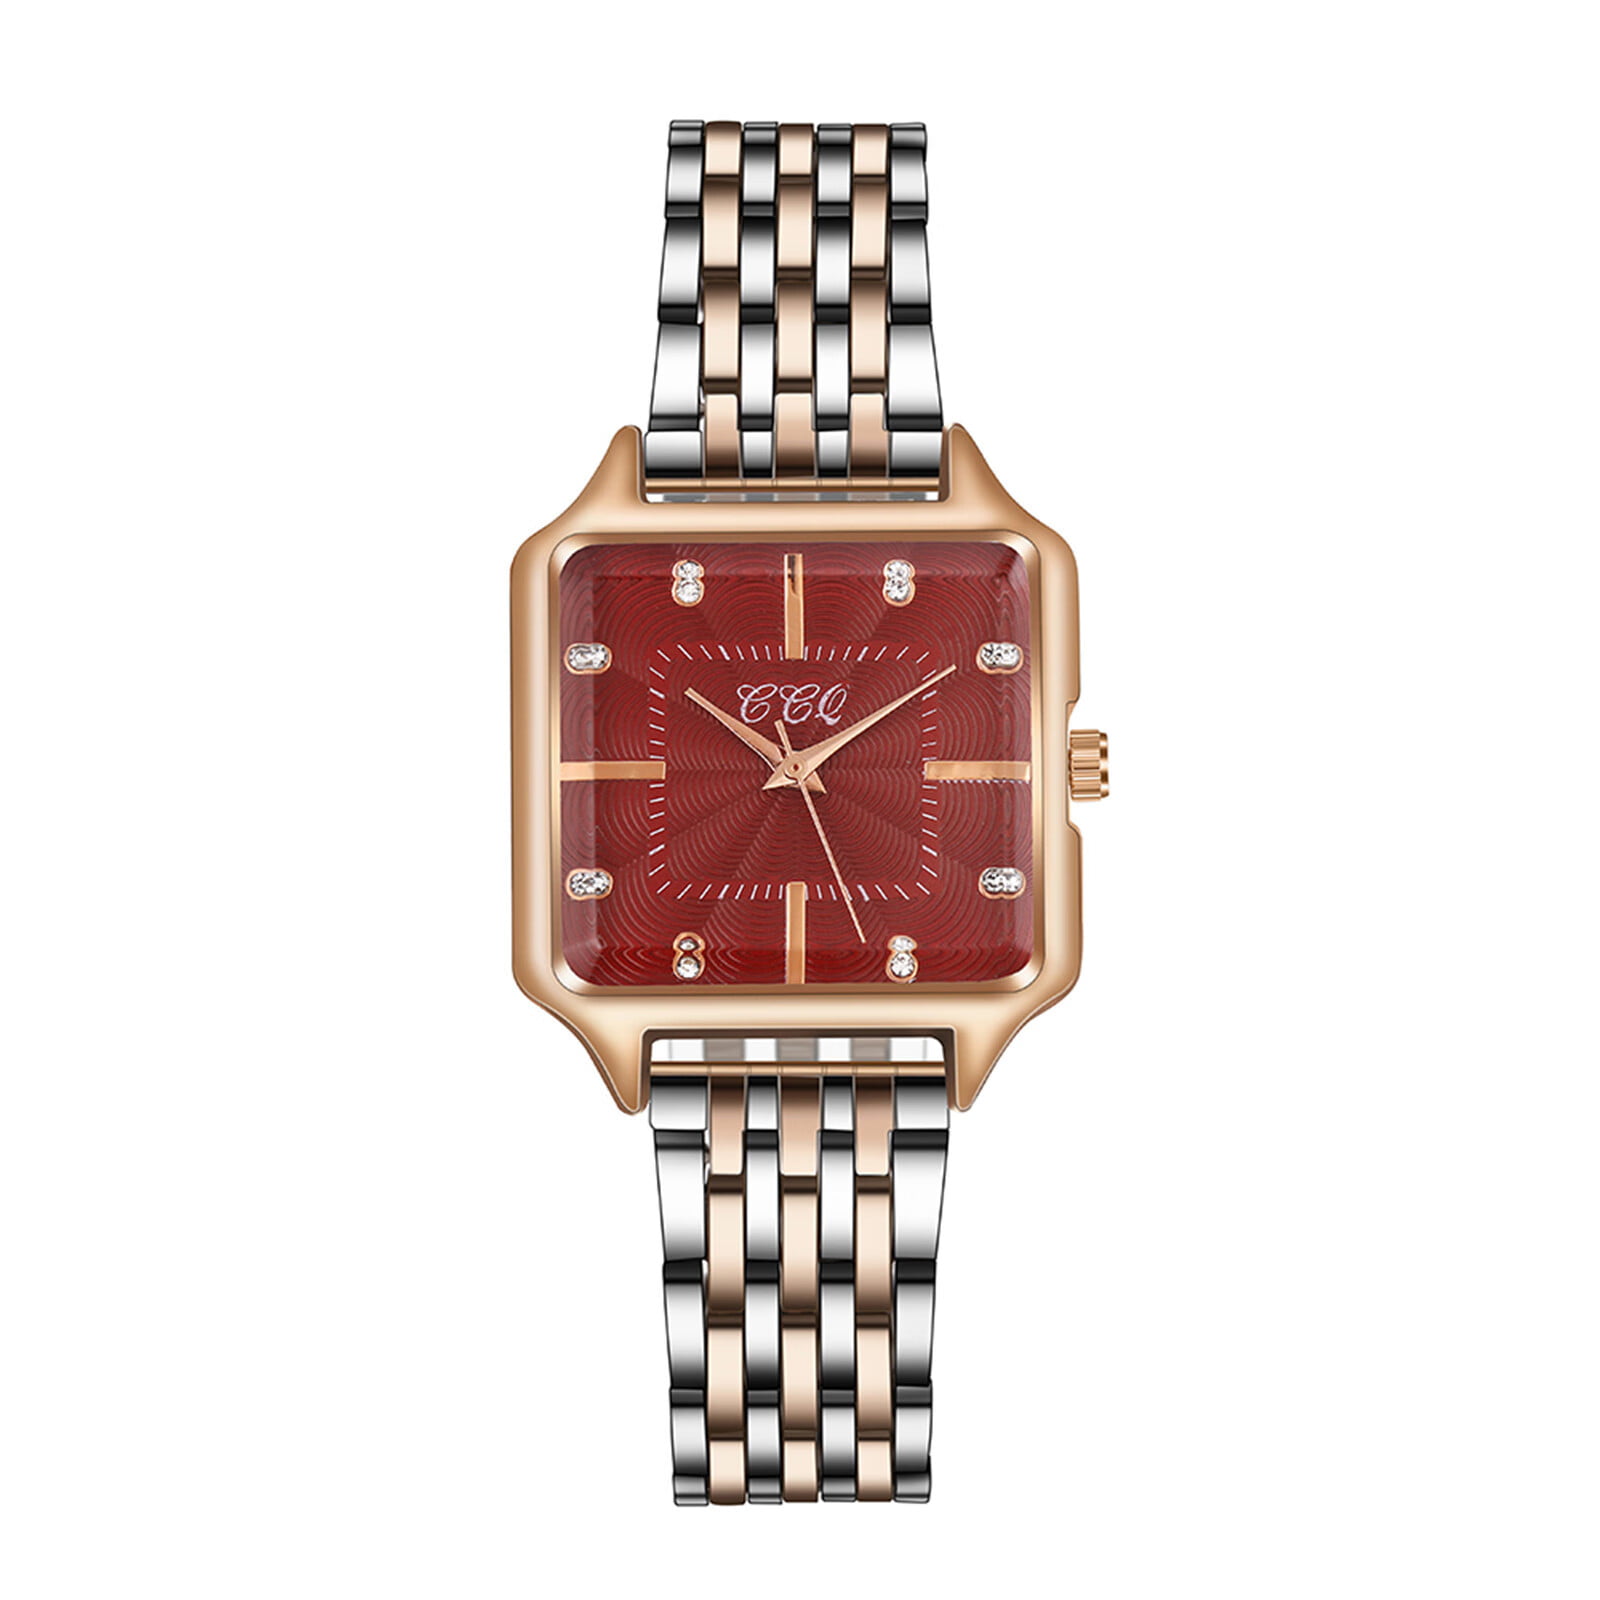 Zppruwei Women'S Watches Quartz Movement Girls Ladies Wristwatch Steel Belt  Watch Holiday Gift